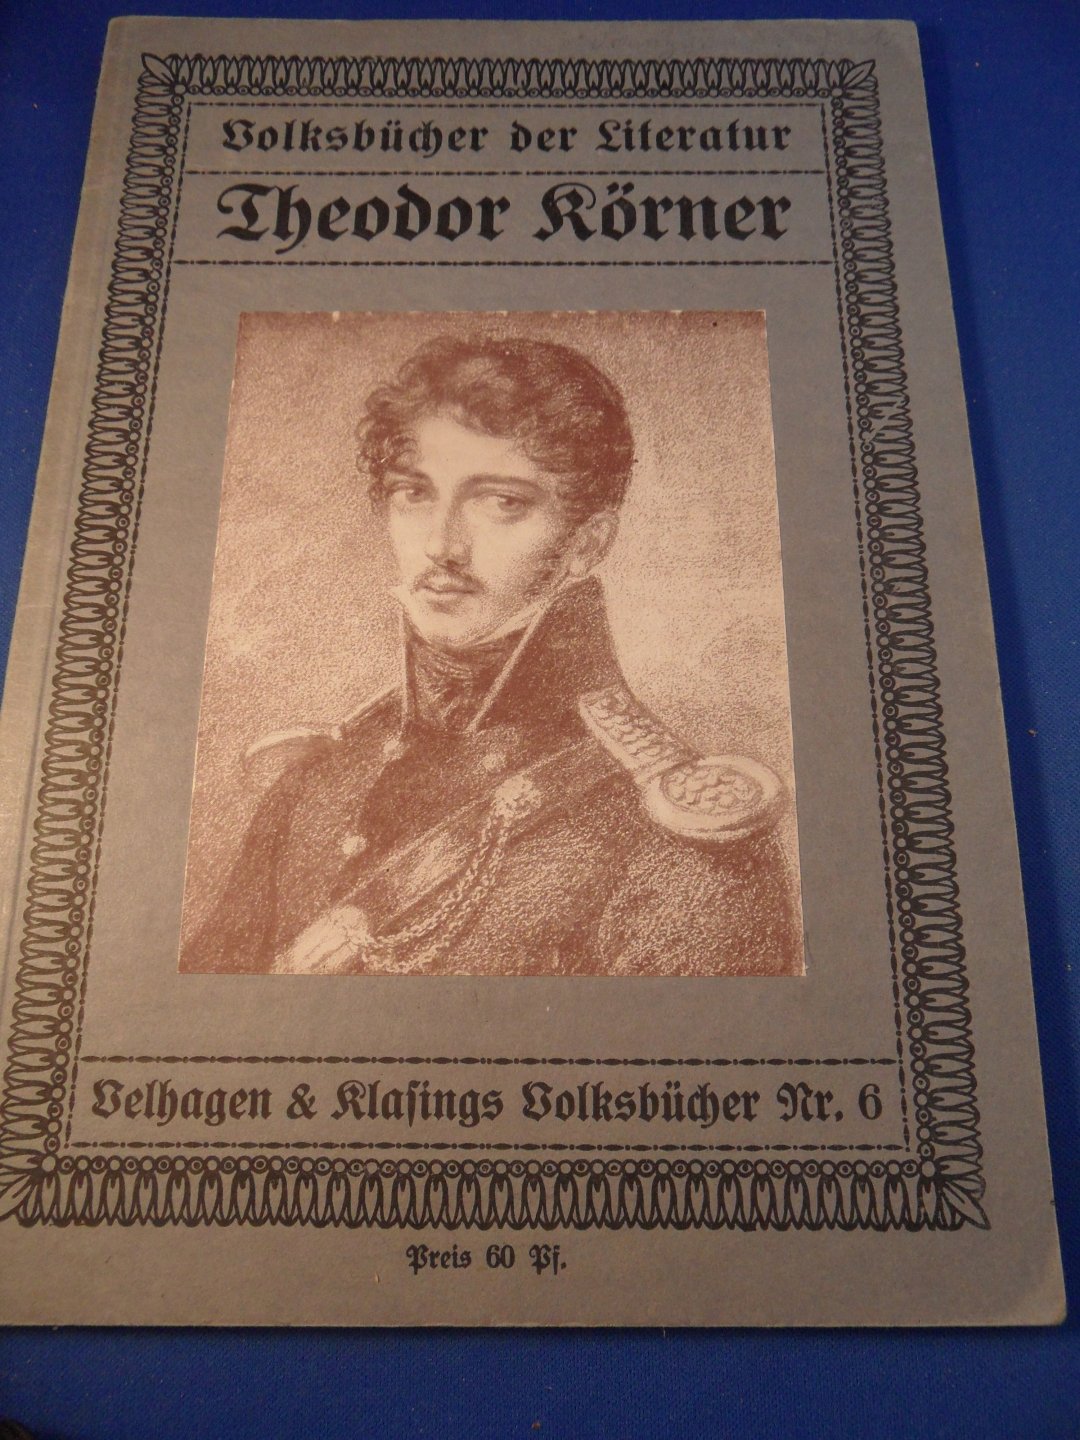 Körner, Theodor - Volksbücher der Literatur Theodor Körner, nr.